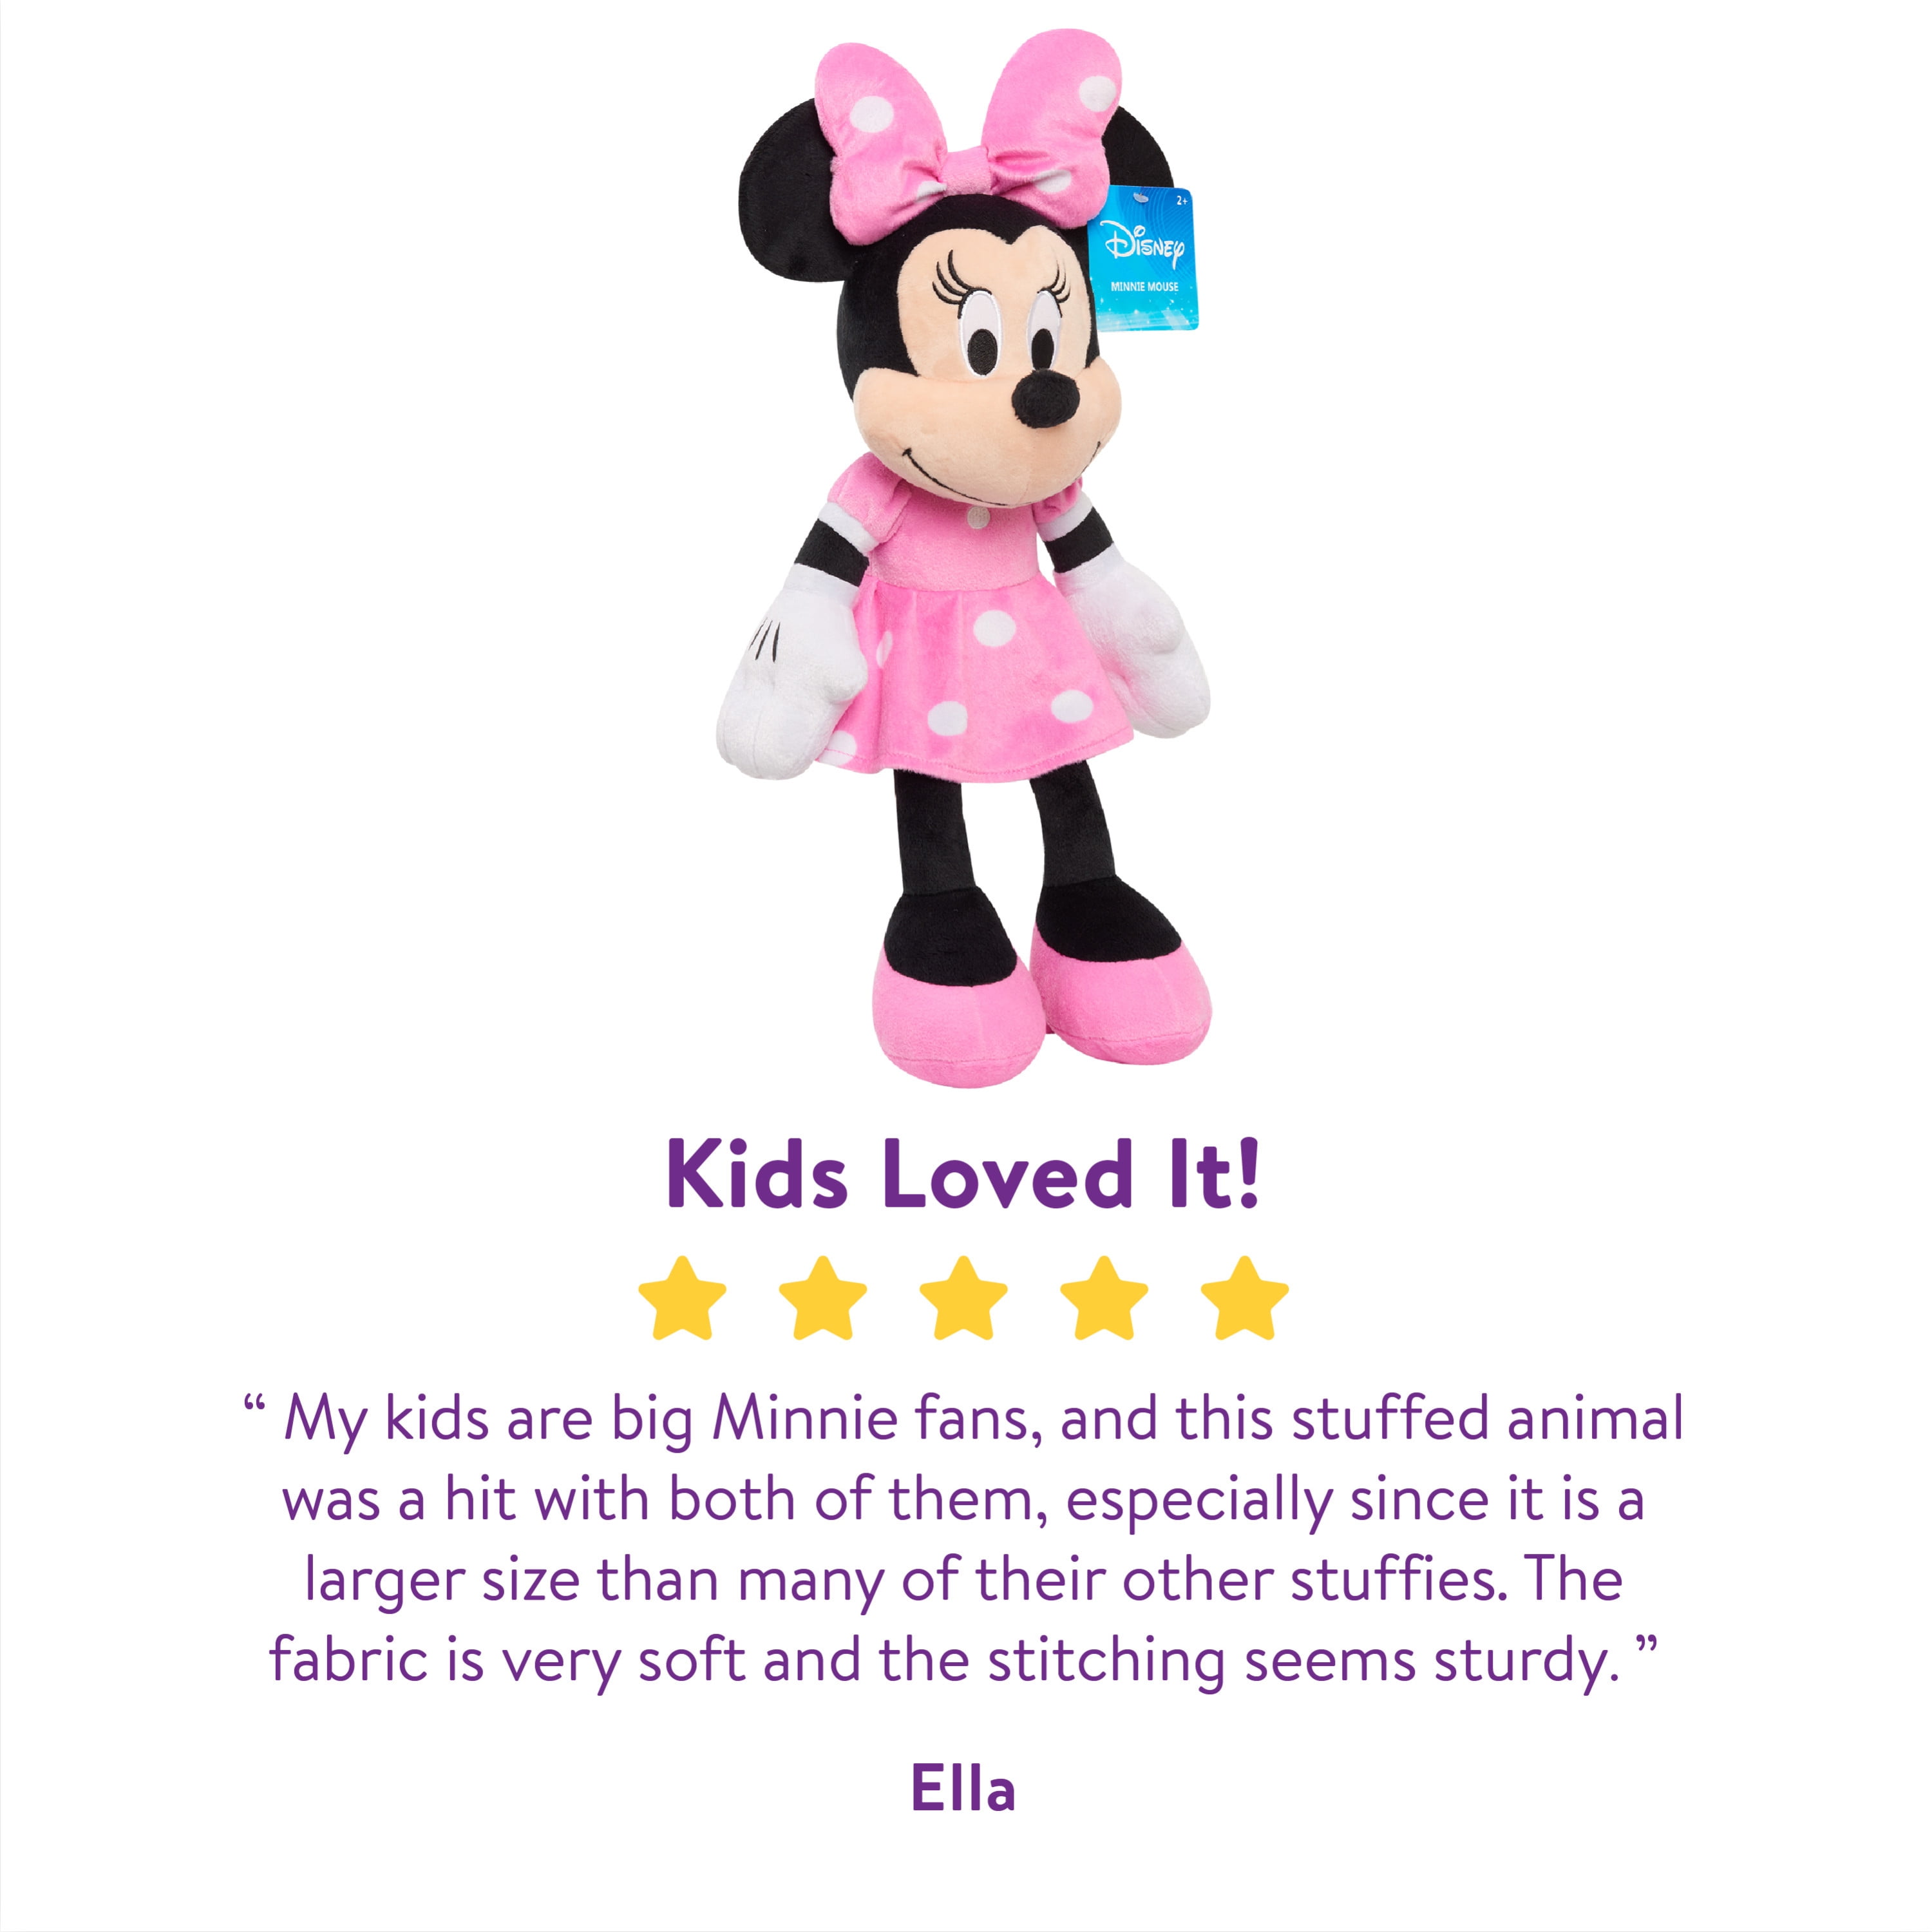 Grande figurine Minnie Disney à 19,99 €